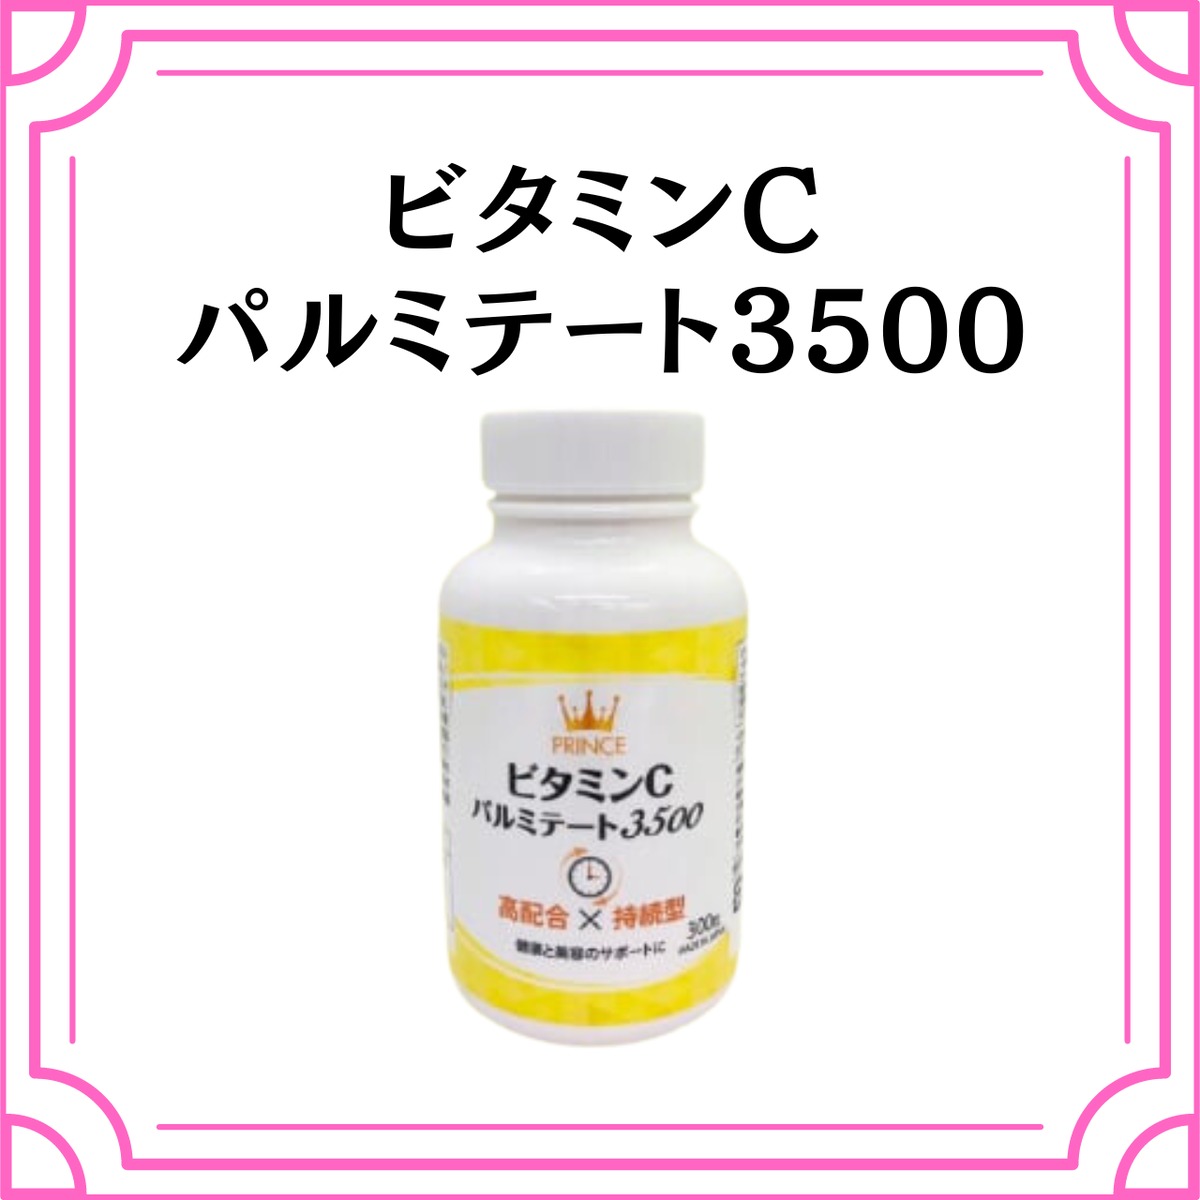 【未開封・特価】ビタミンCパルミテート3500 _ビタミンCサプリ